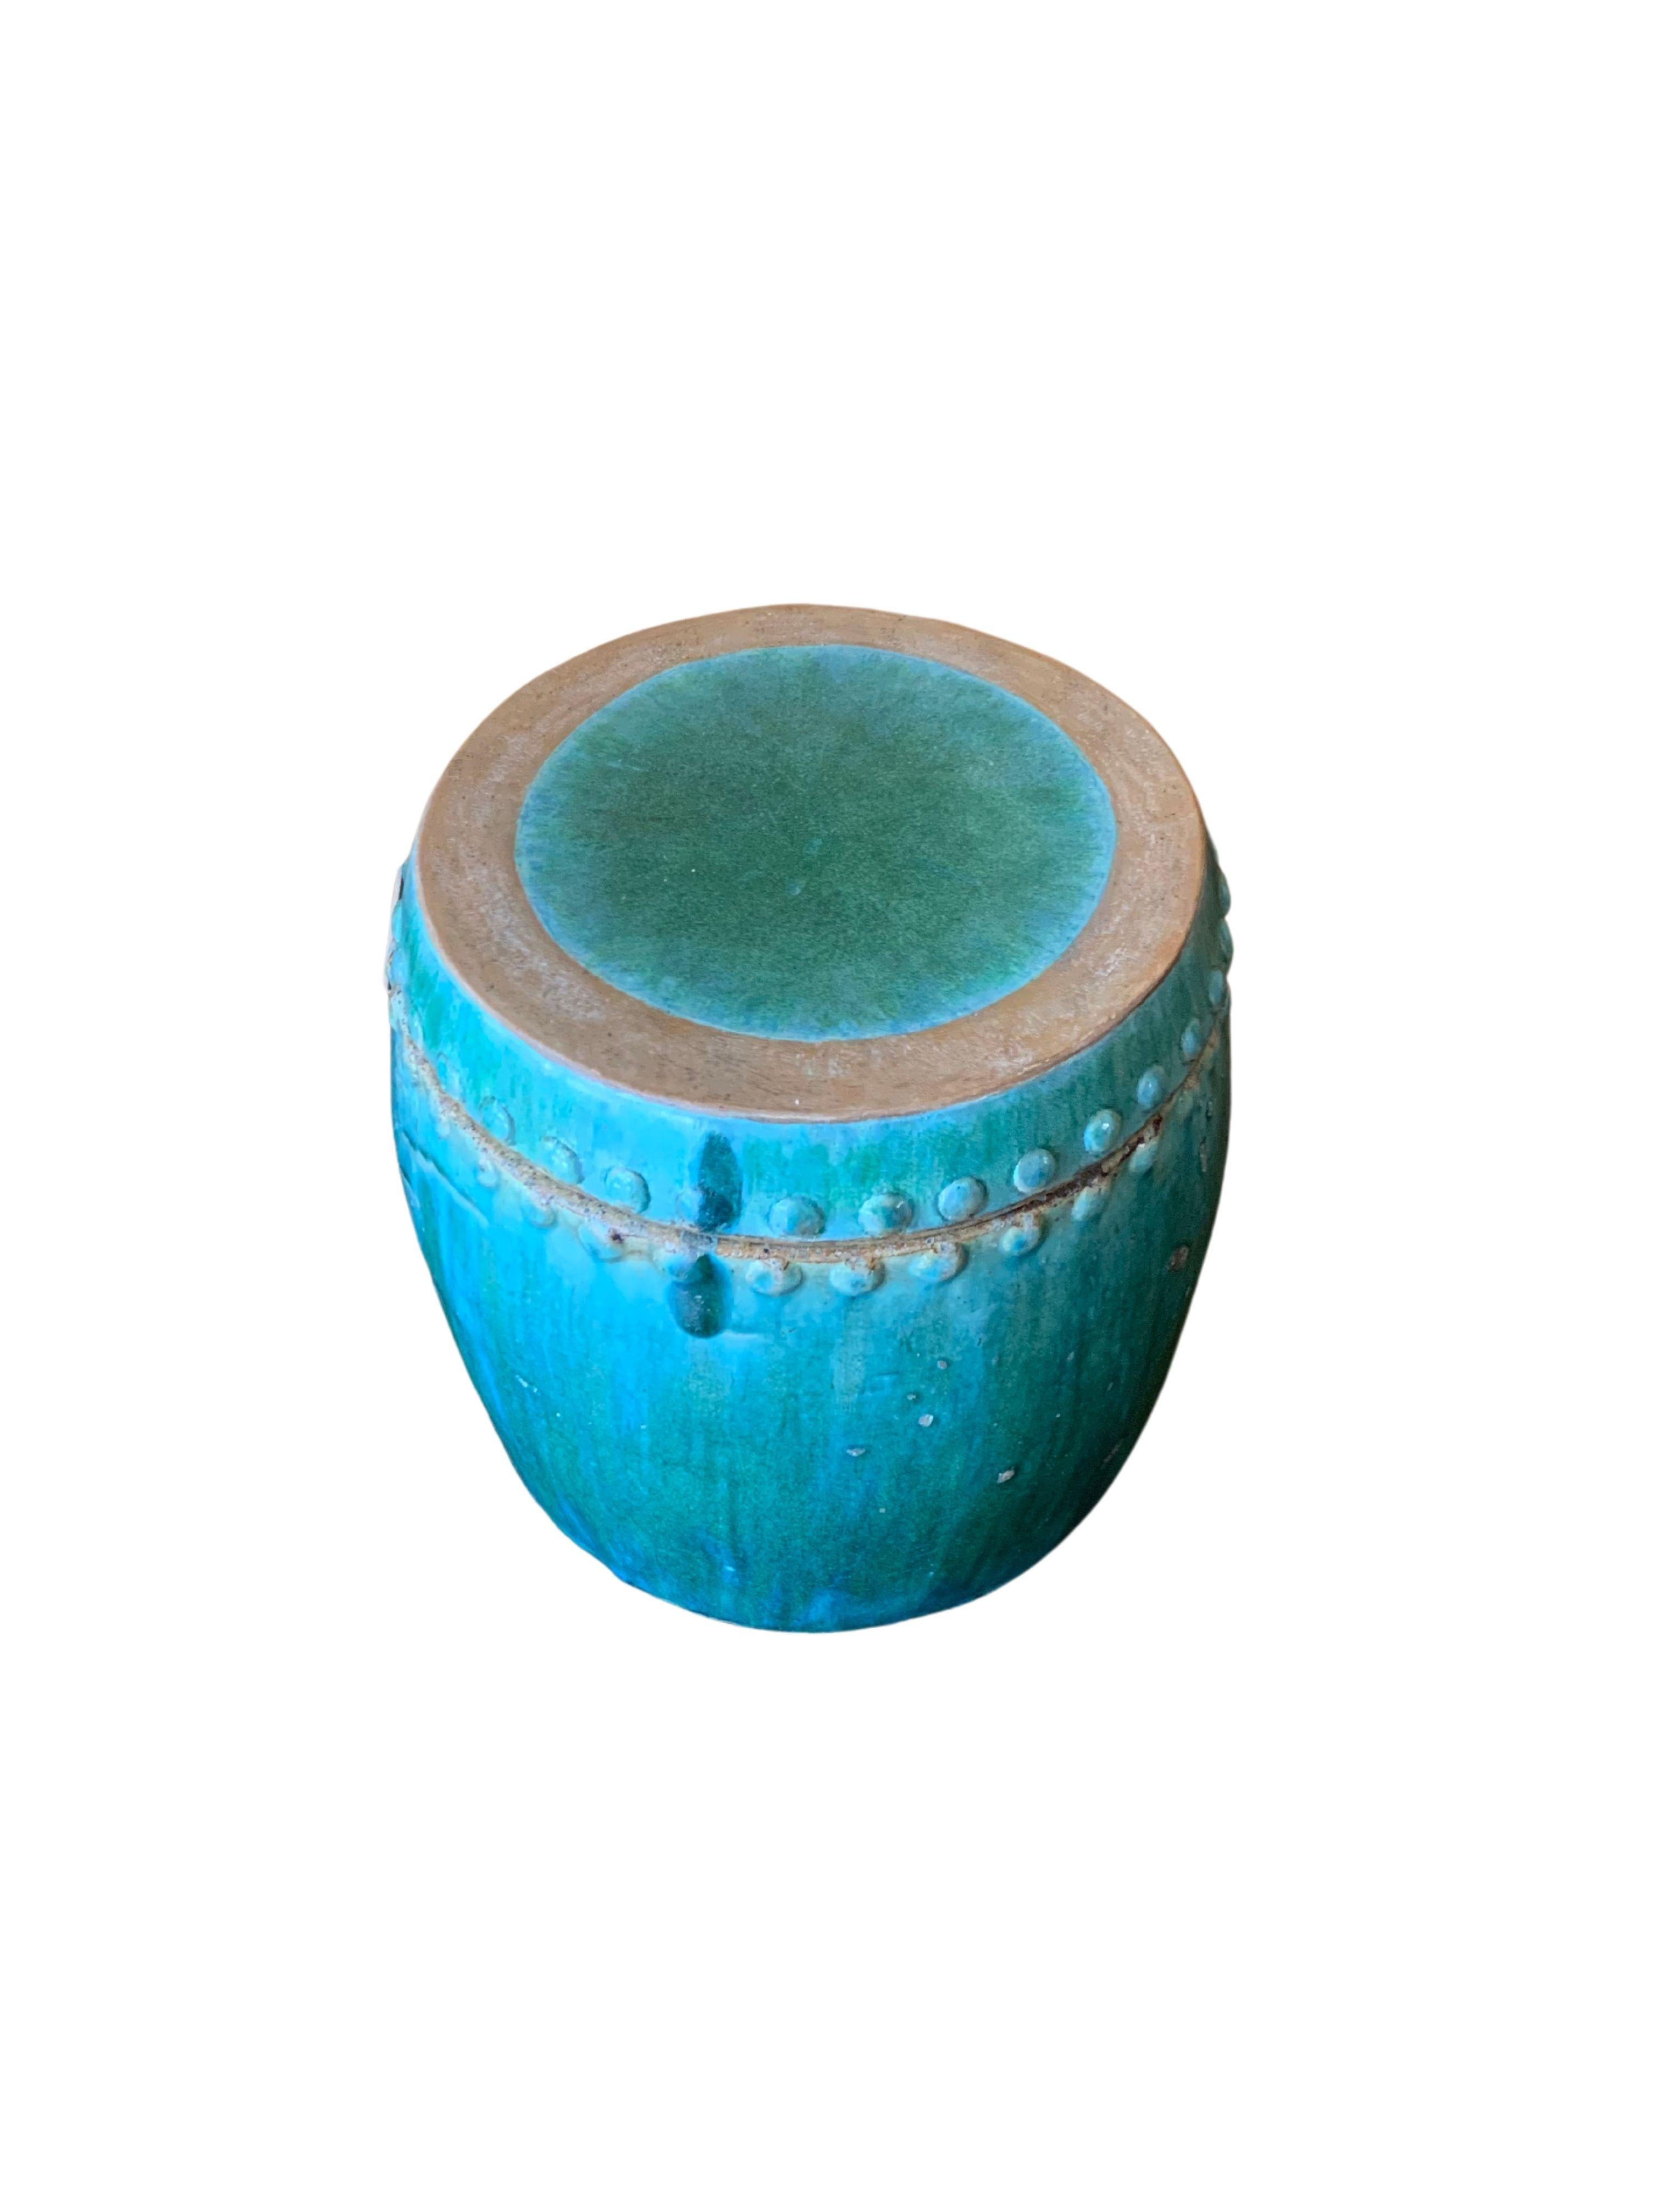 ceramic glazed pots